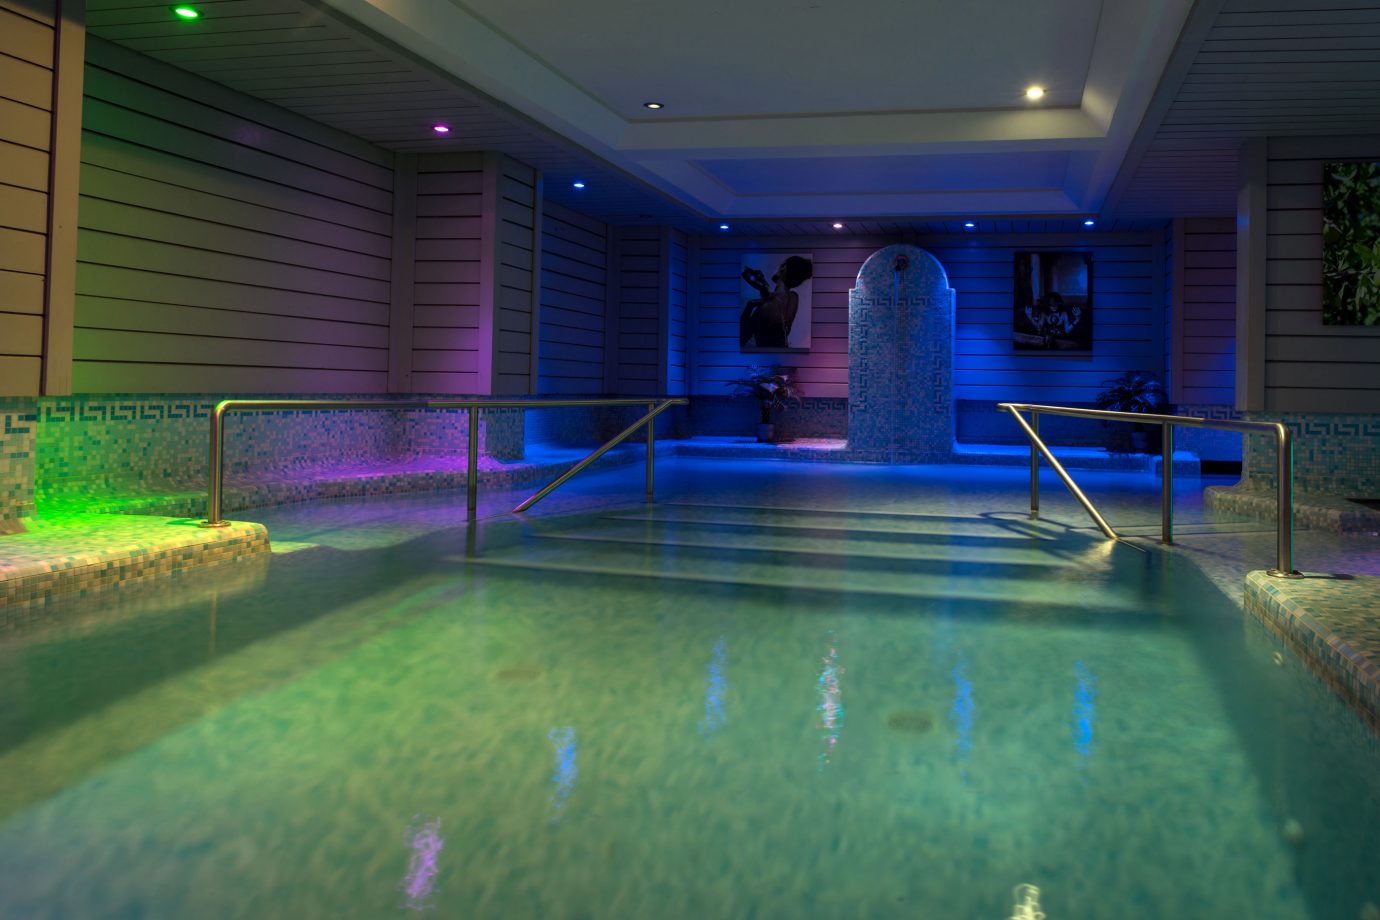 Chamonix hotel with pool